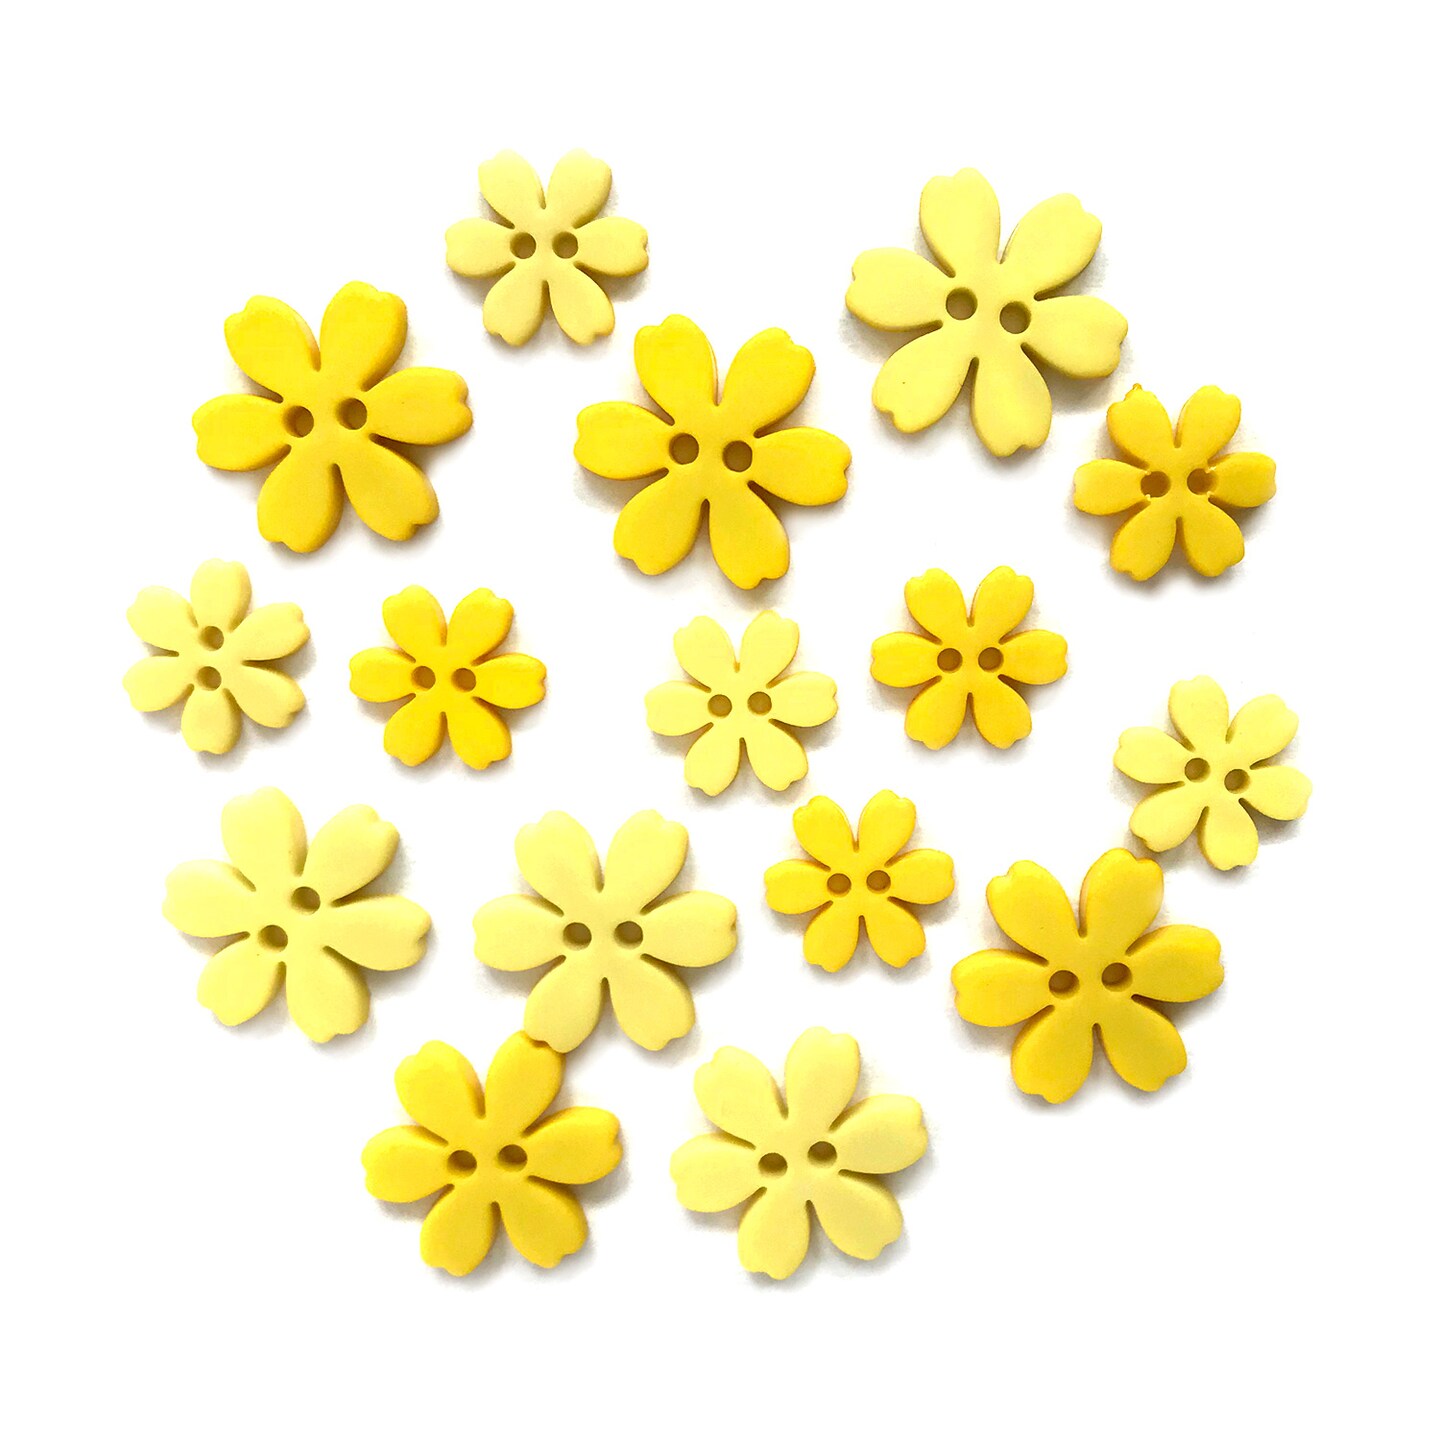 Flower buttons